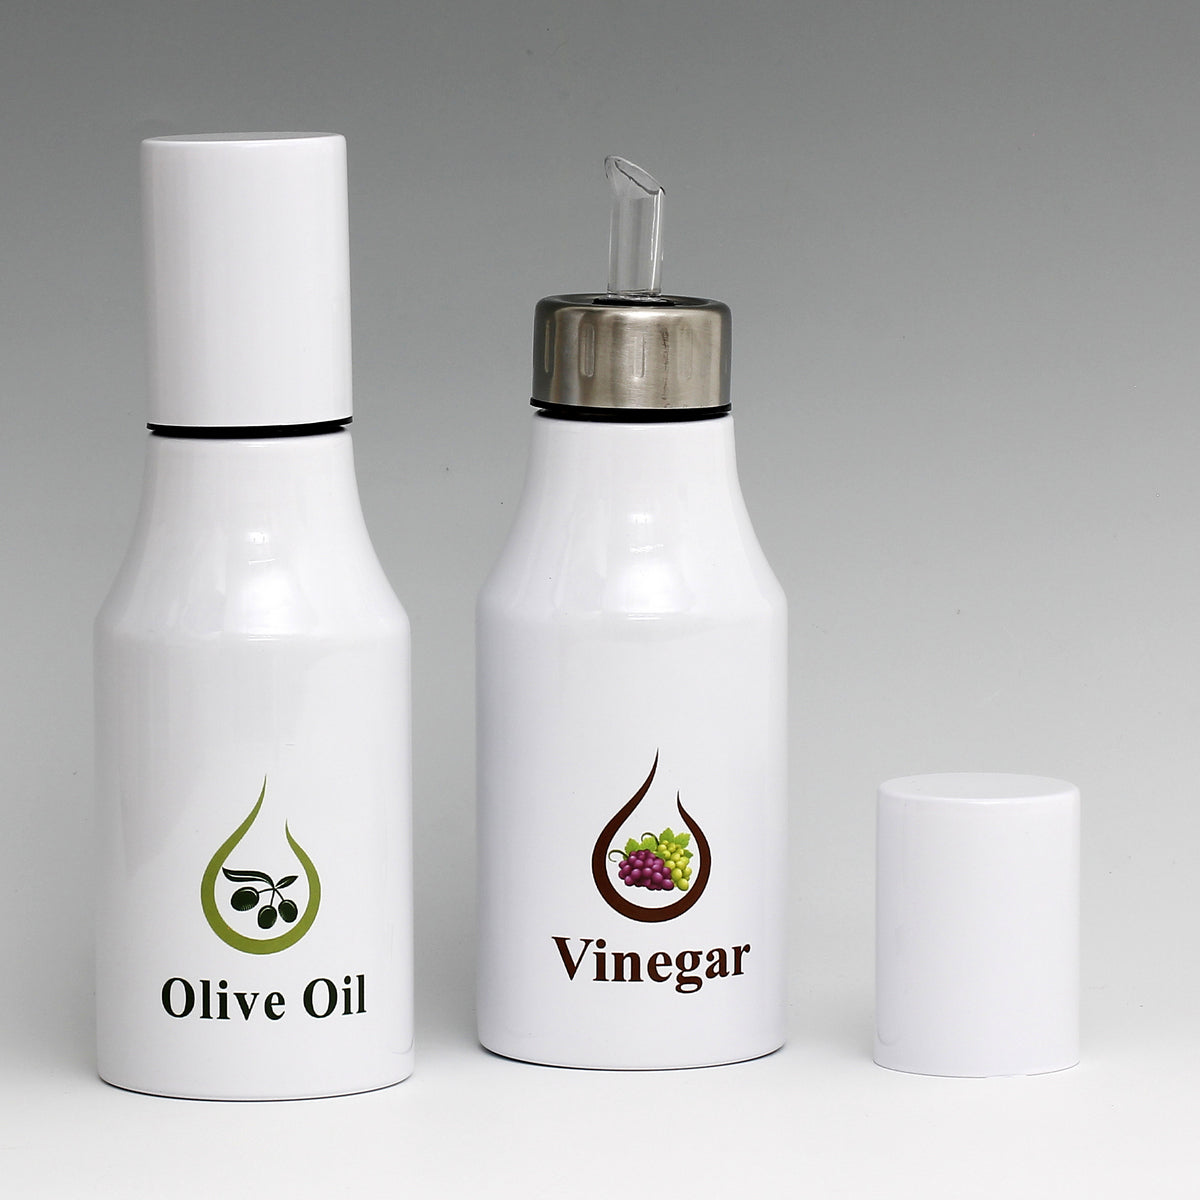 SUBLIMART: Bundle Oil & Vinegar Dispensers with non-drip pourer and dust cover cap (Design 07)